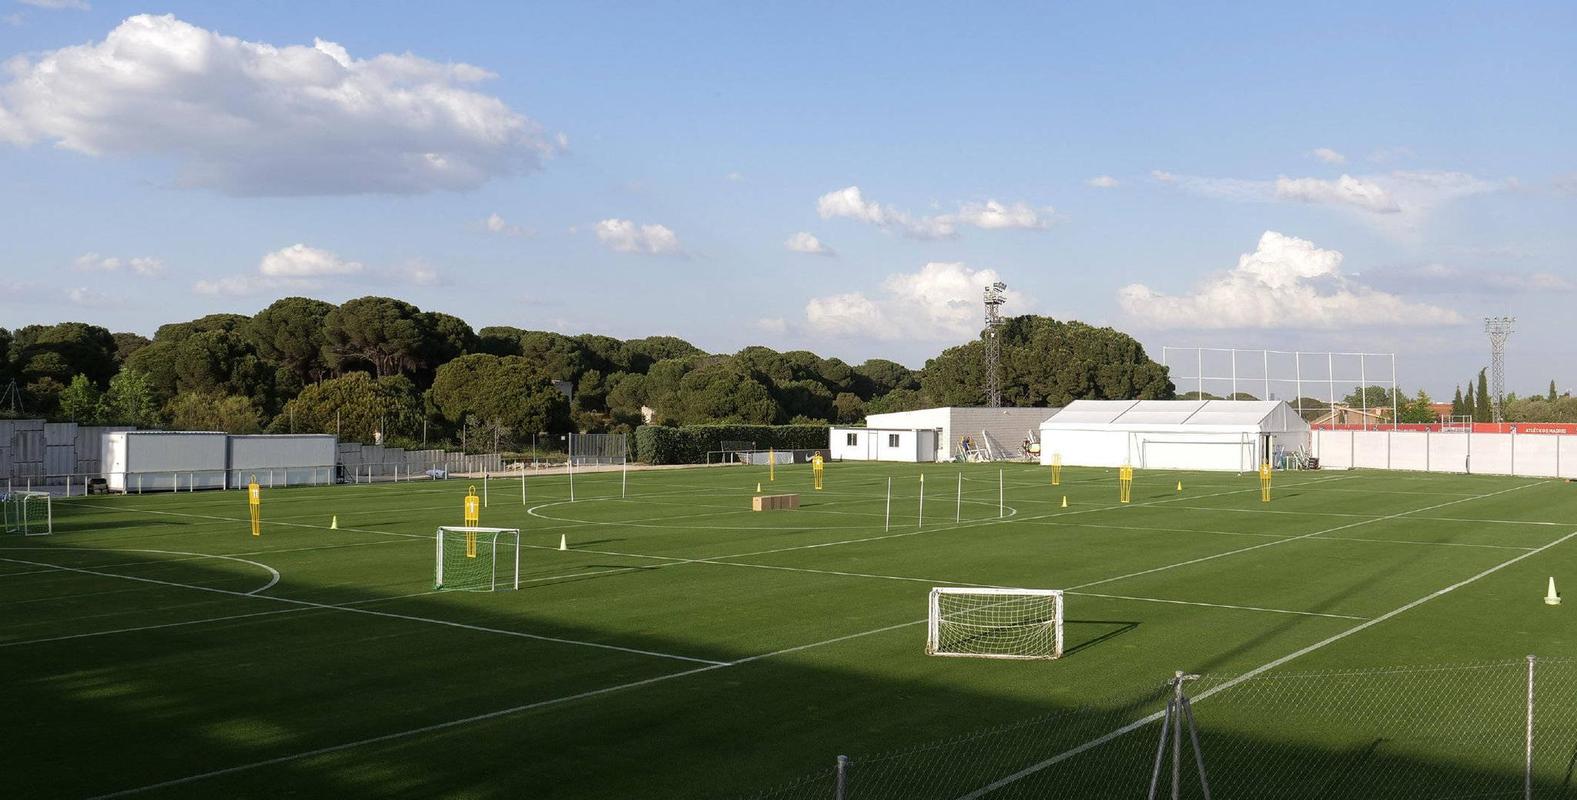 马德里竞技足球俱乐部官方表示:训练场准备就绪,训练即将开始